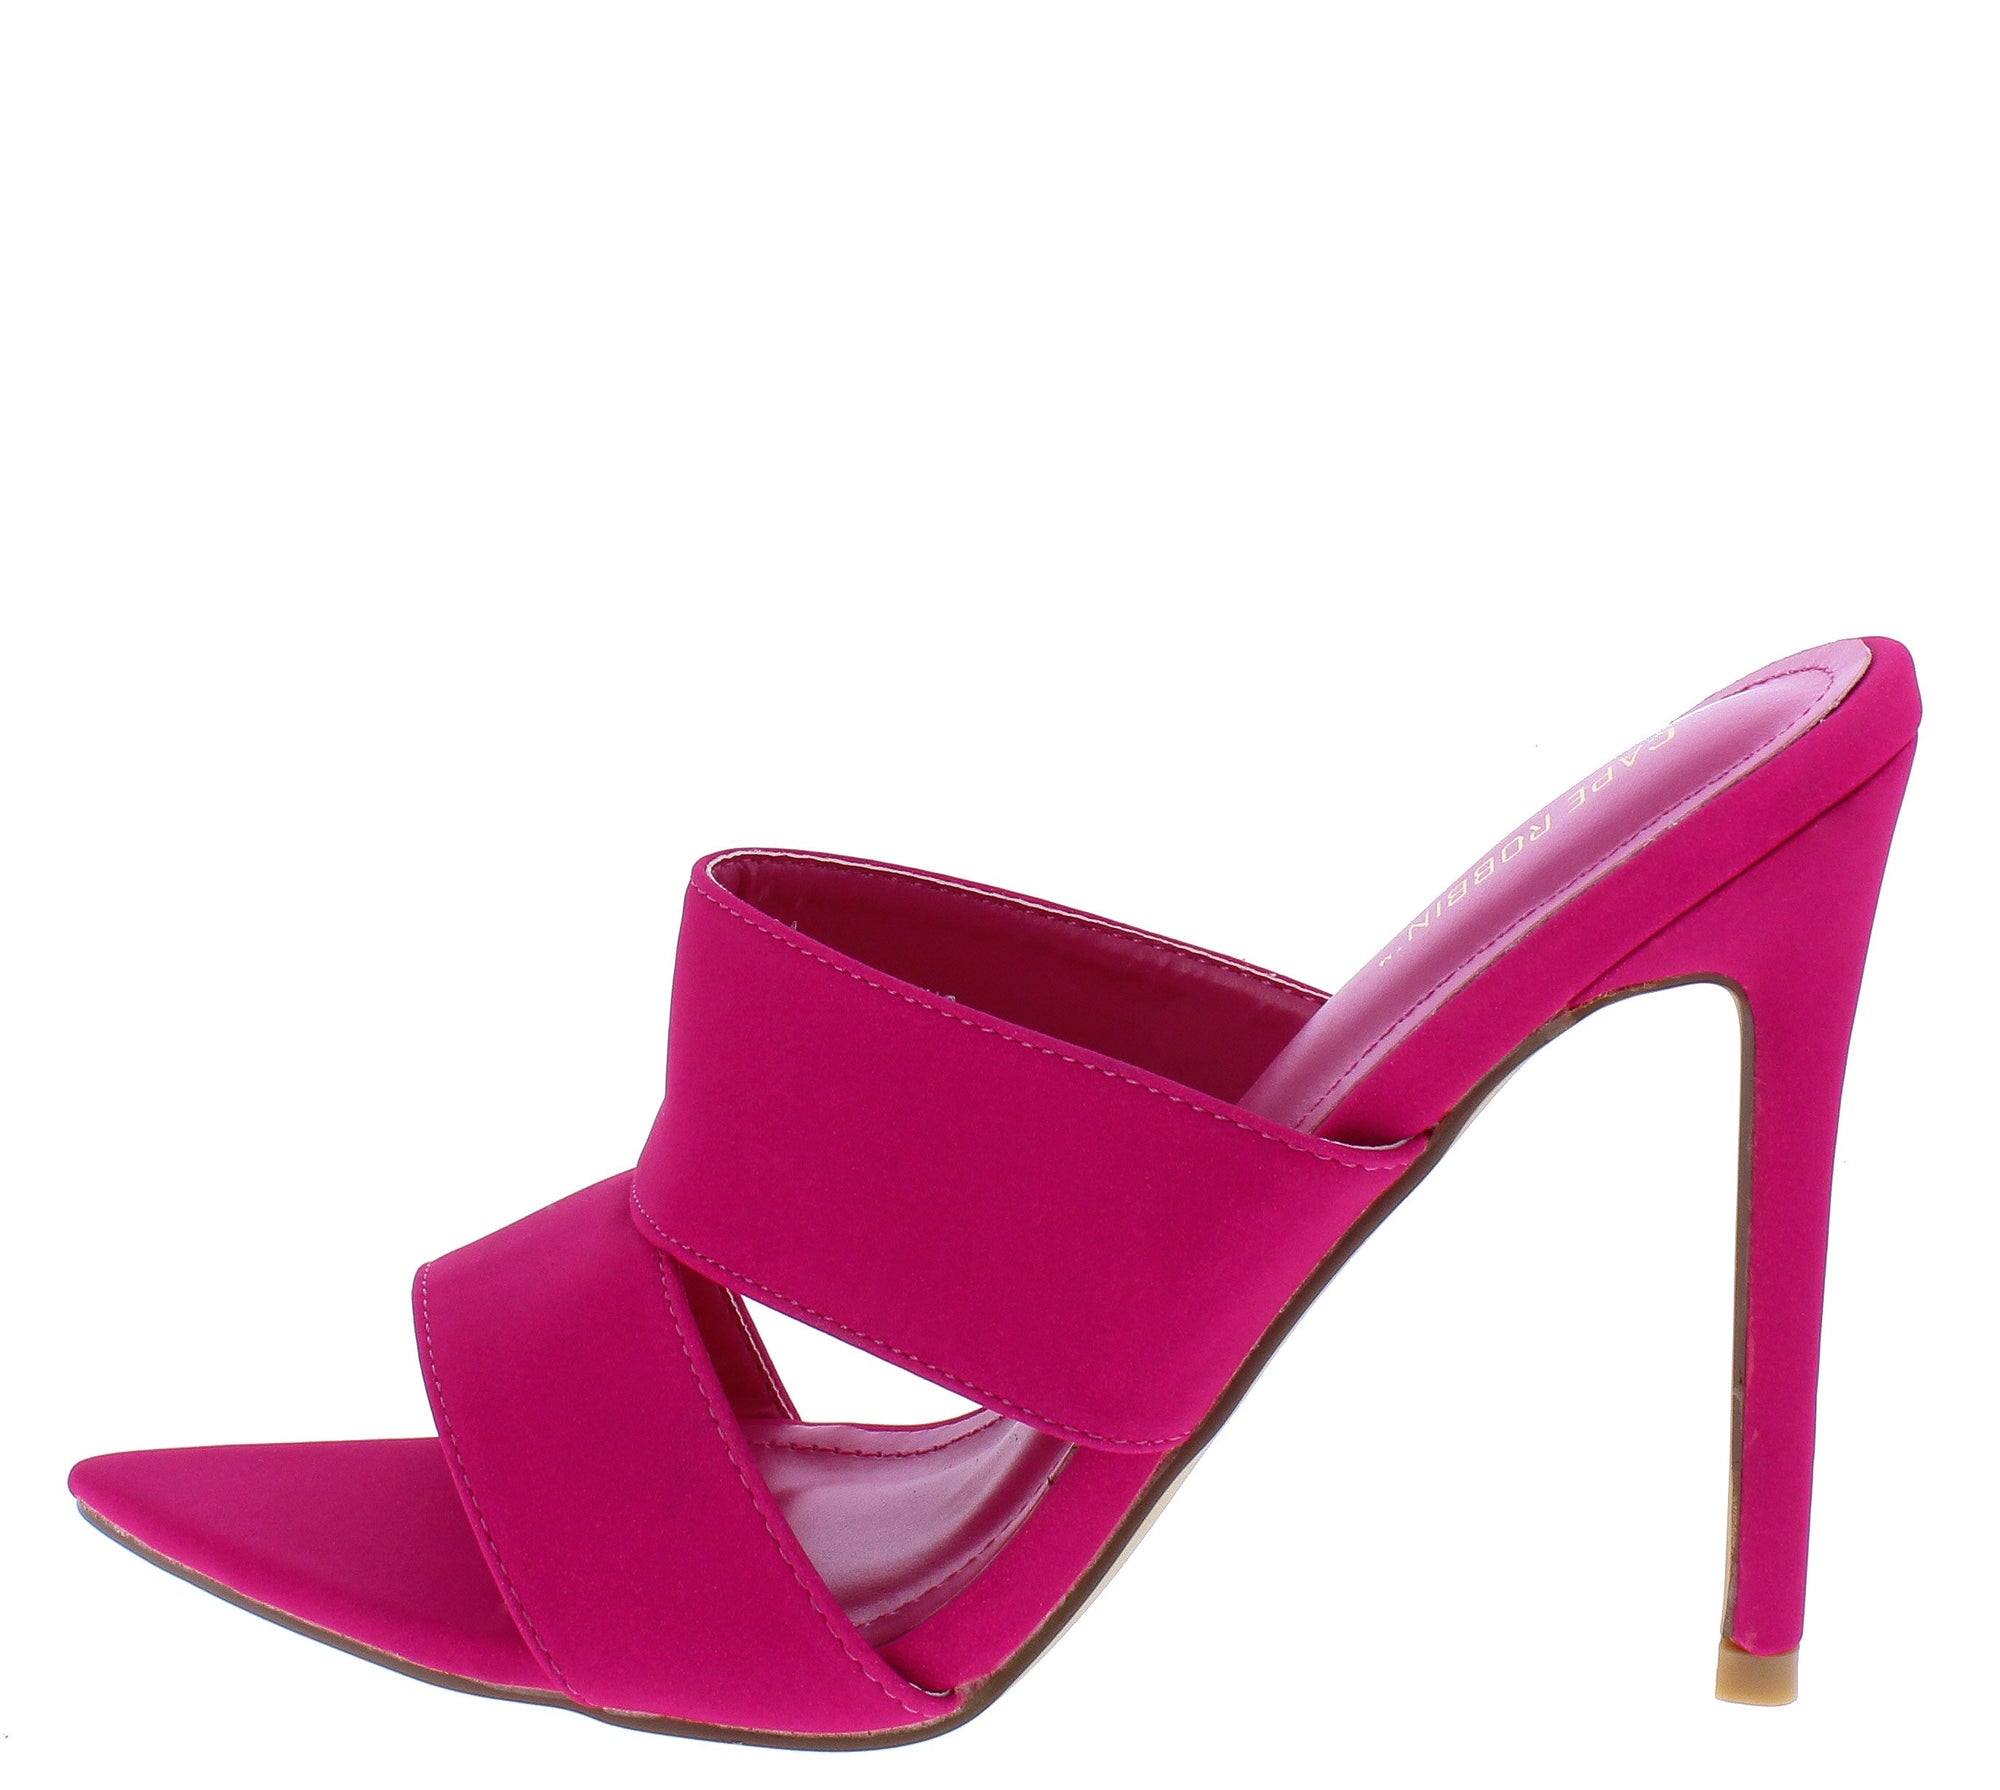 mule stiletto heels